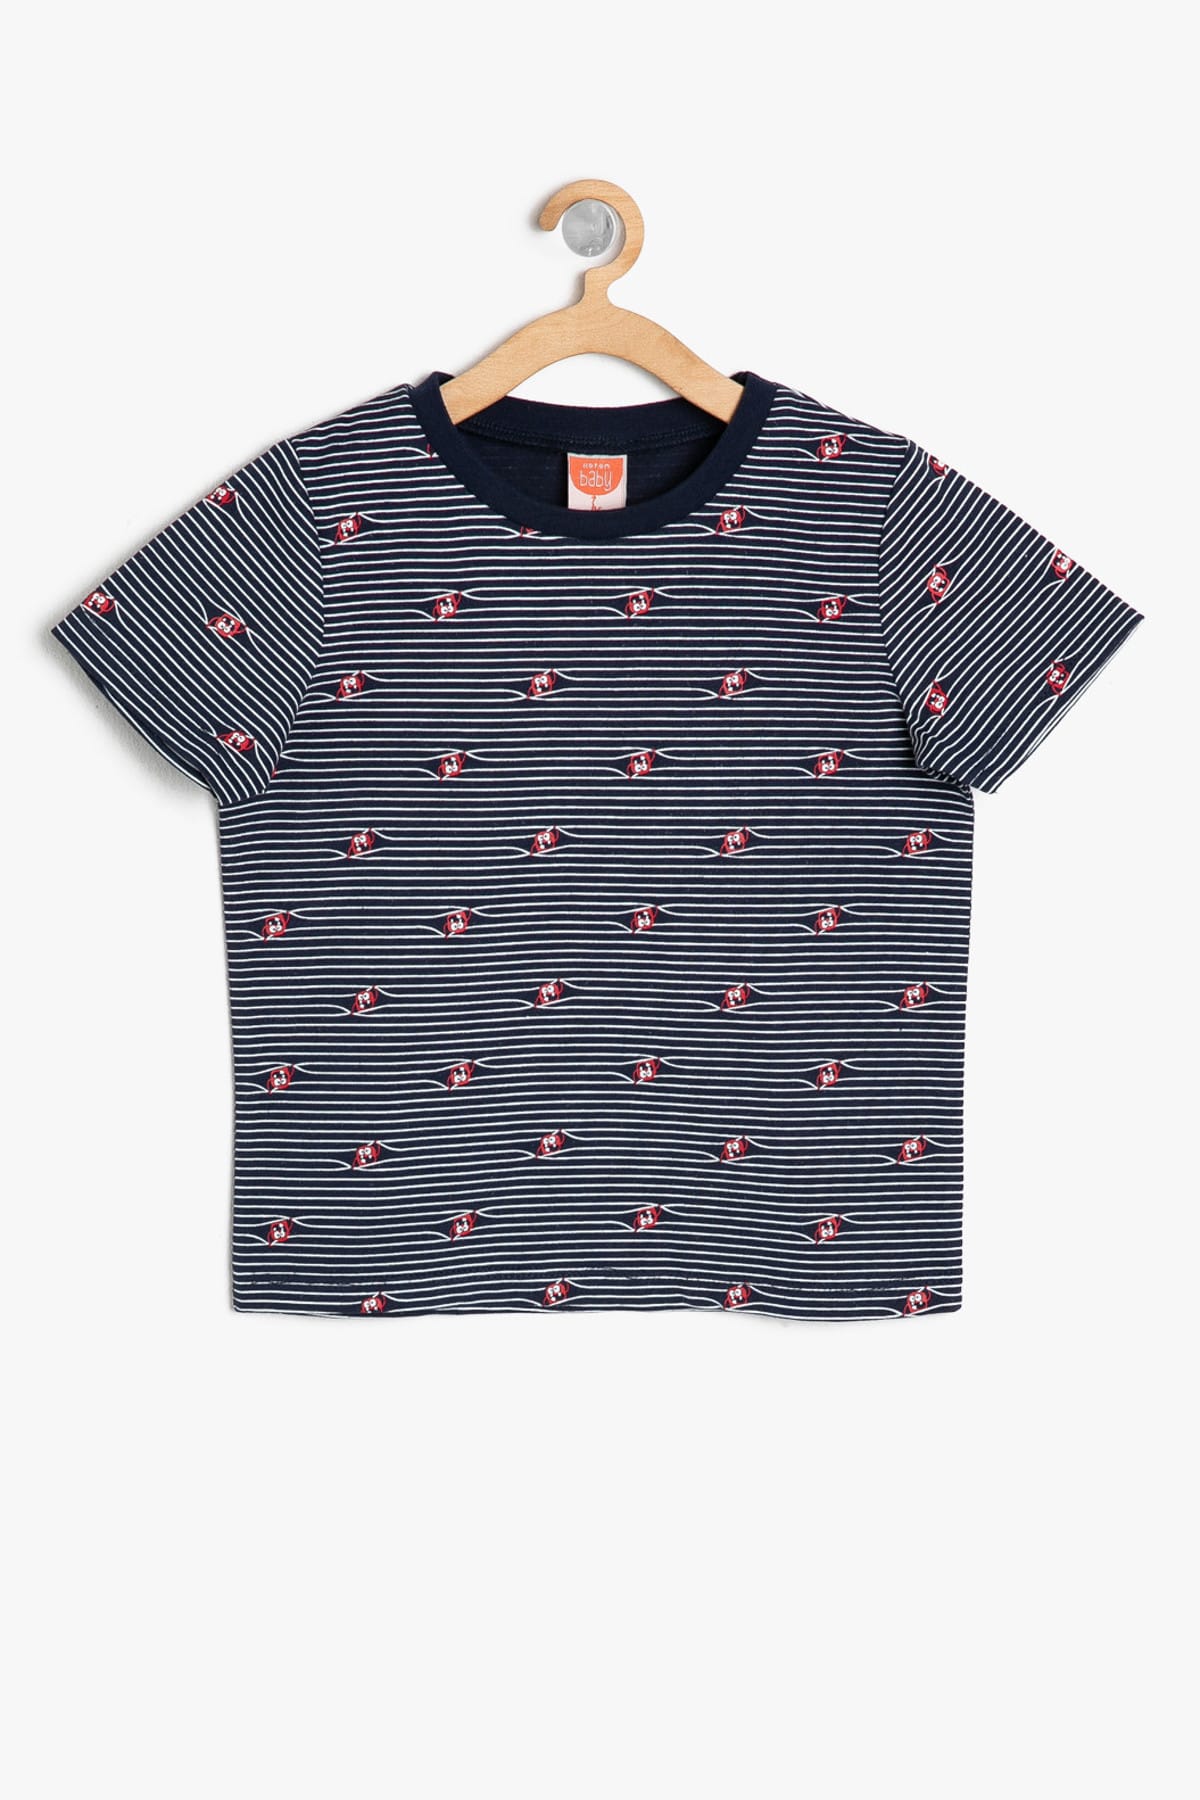 Značka Koton - Koton Baby Boy Navy Blue Patterned T-Shirt